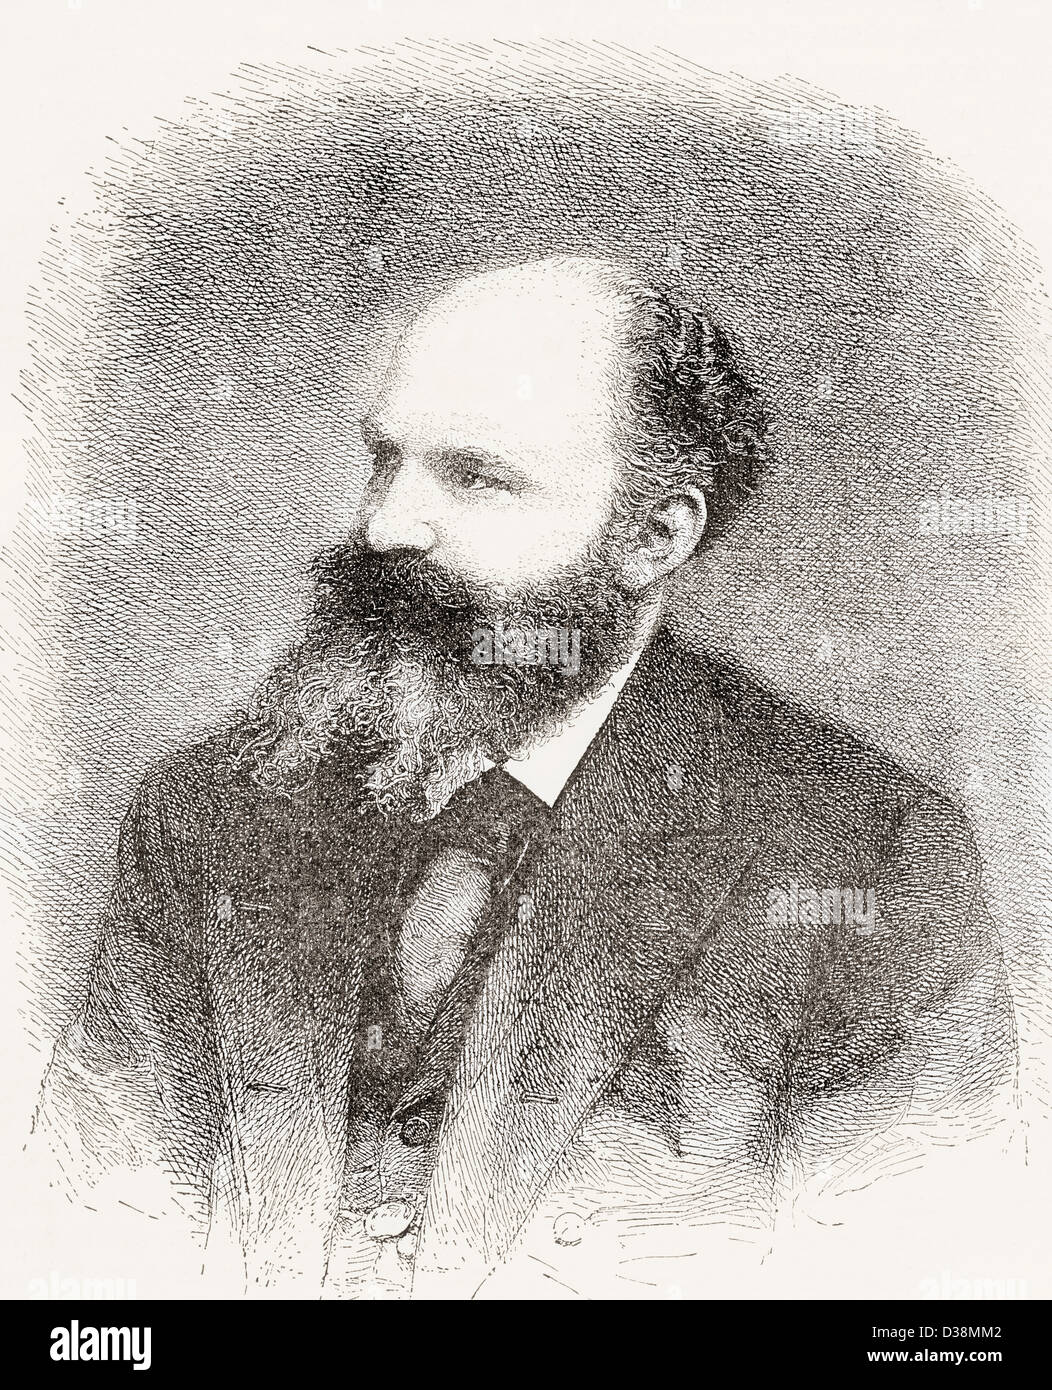 Georg Moritz Ebers, 1837 - 1898. Egittologo tedesco e romanziere. Foto Stock